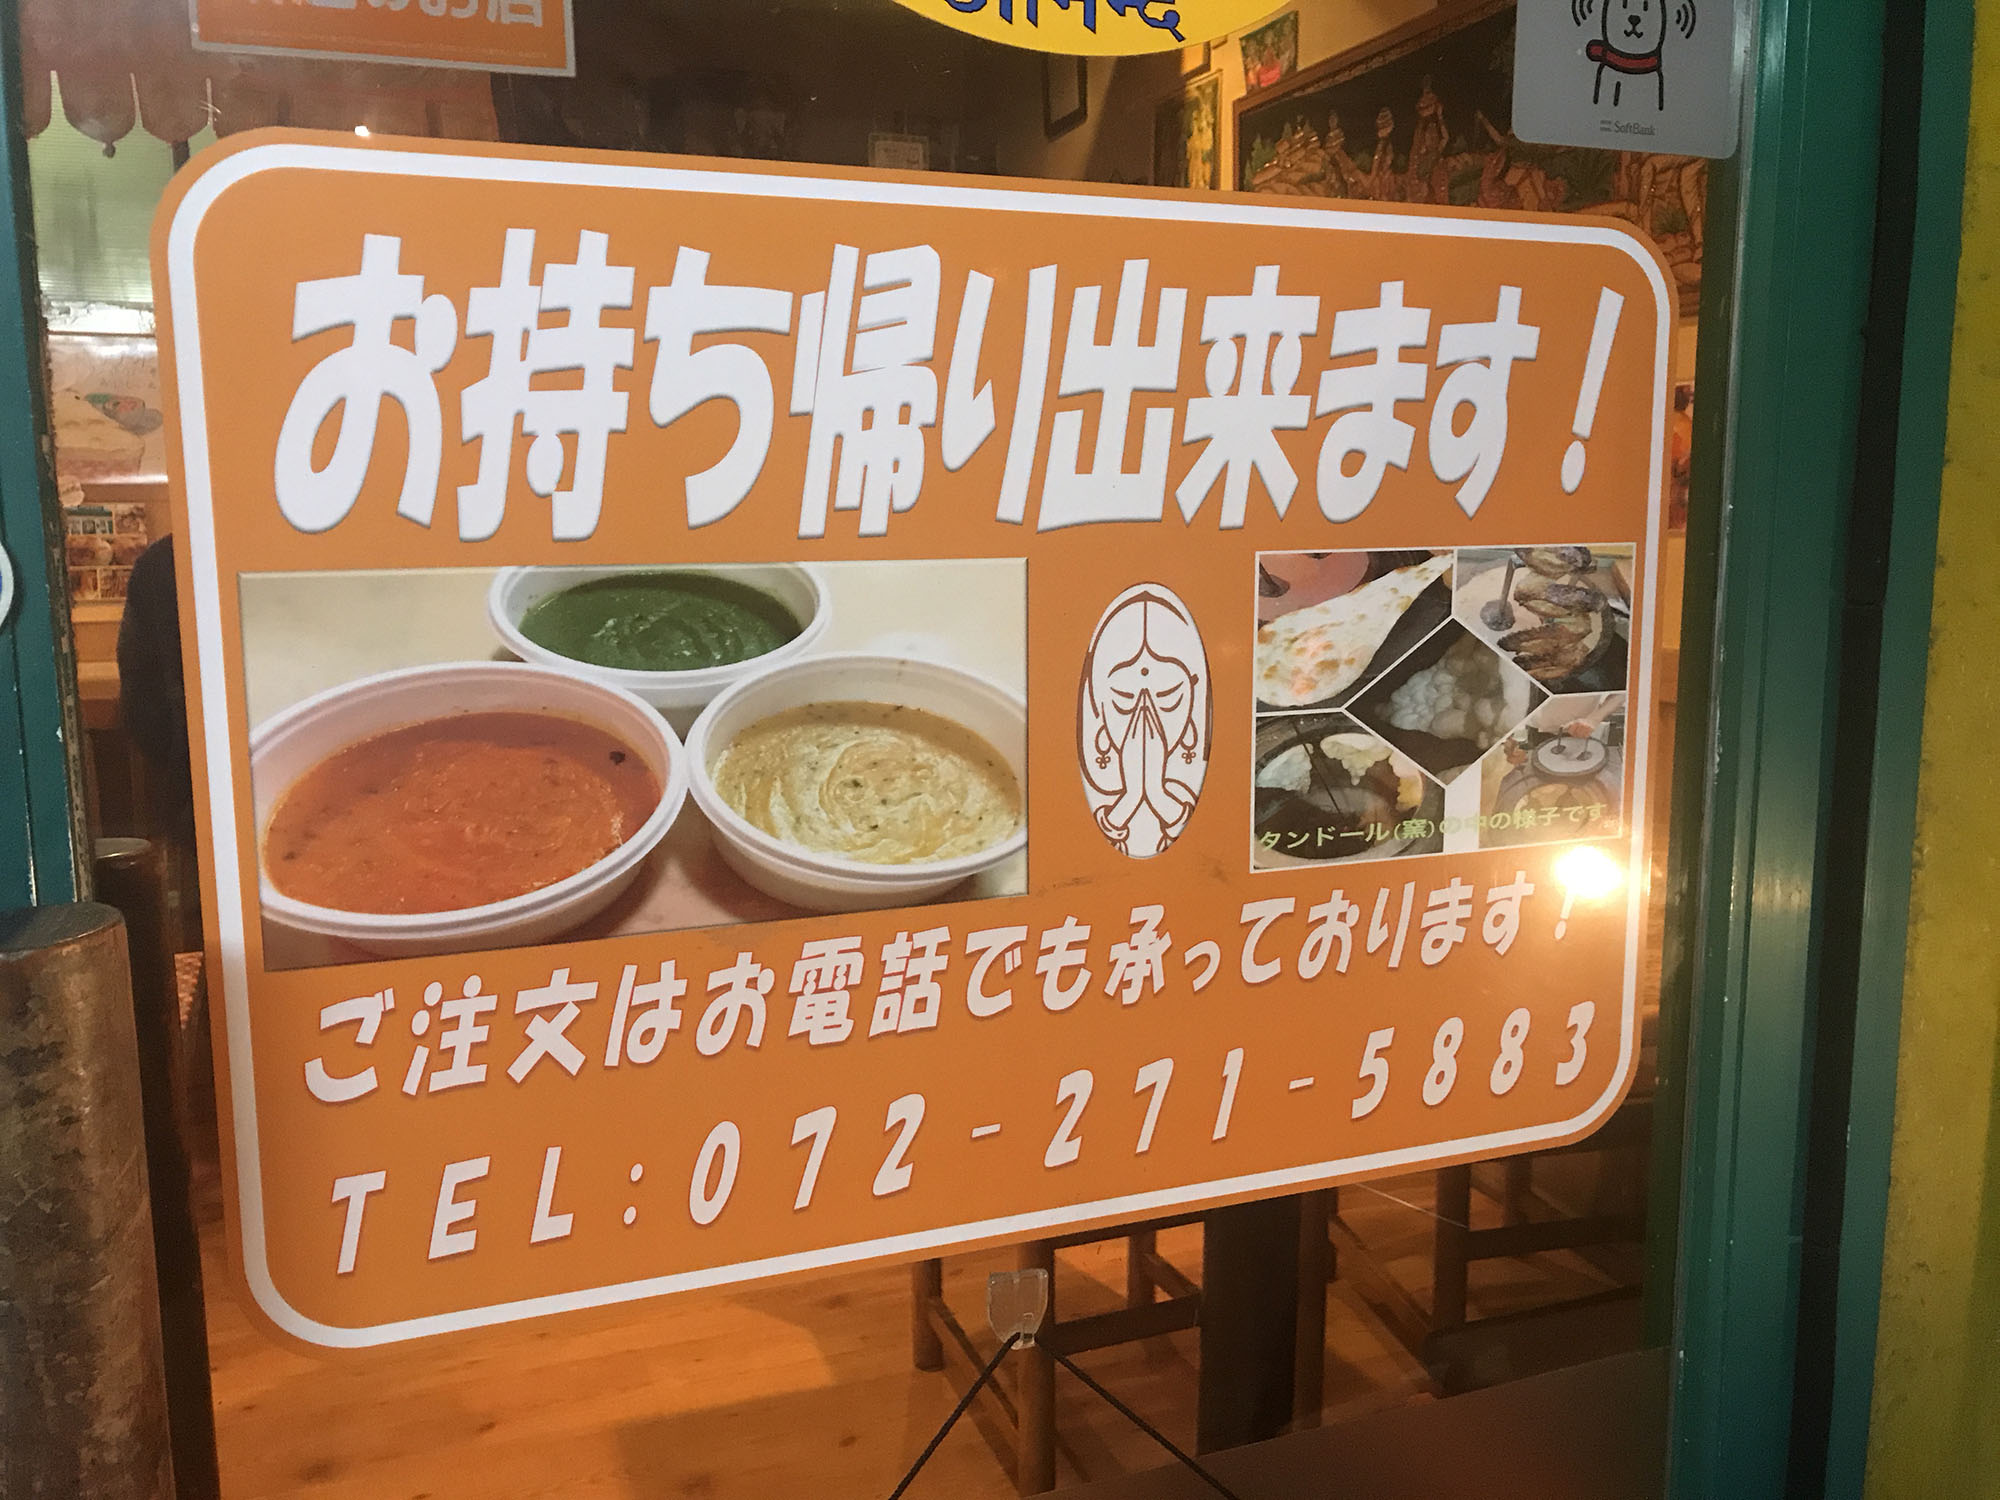 アーナンド インドカレー 大阪 堺市 鳳 インド料理はランチやディナーにもおすすめ、お持ち帰りもできる。